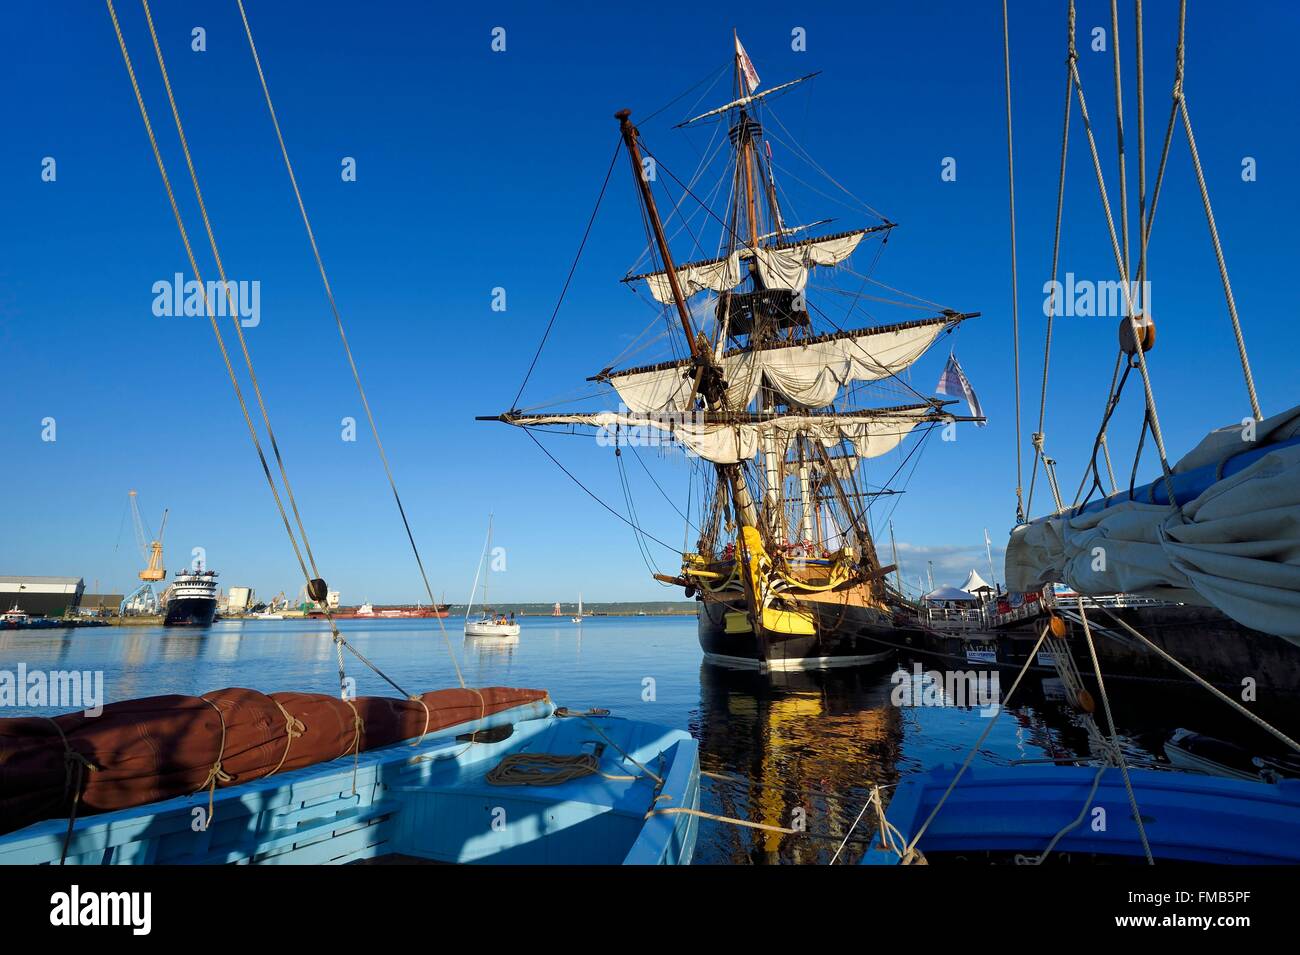 Francia, Finisterre, el puerto de Brest, l'Hermione, réplica de la fragata de tres mástiles que trajo el marqués de Lafayette a América Foto de stock